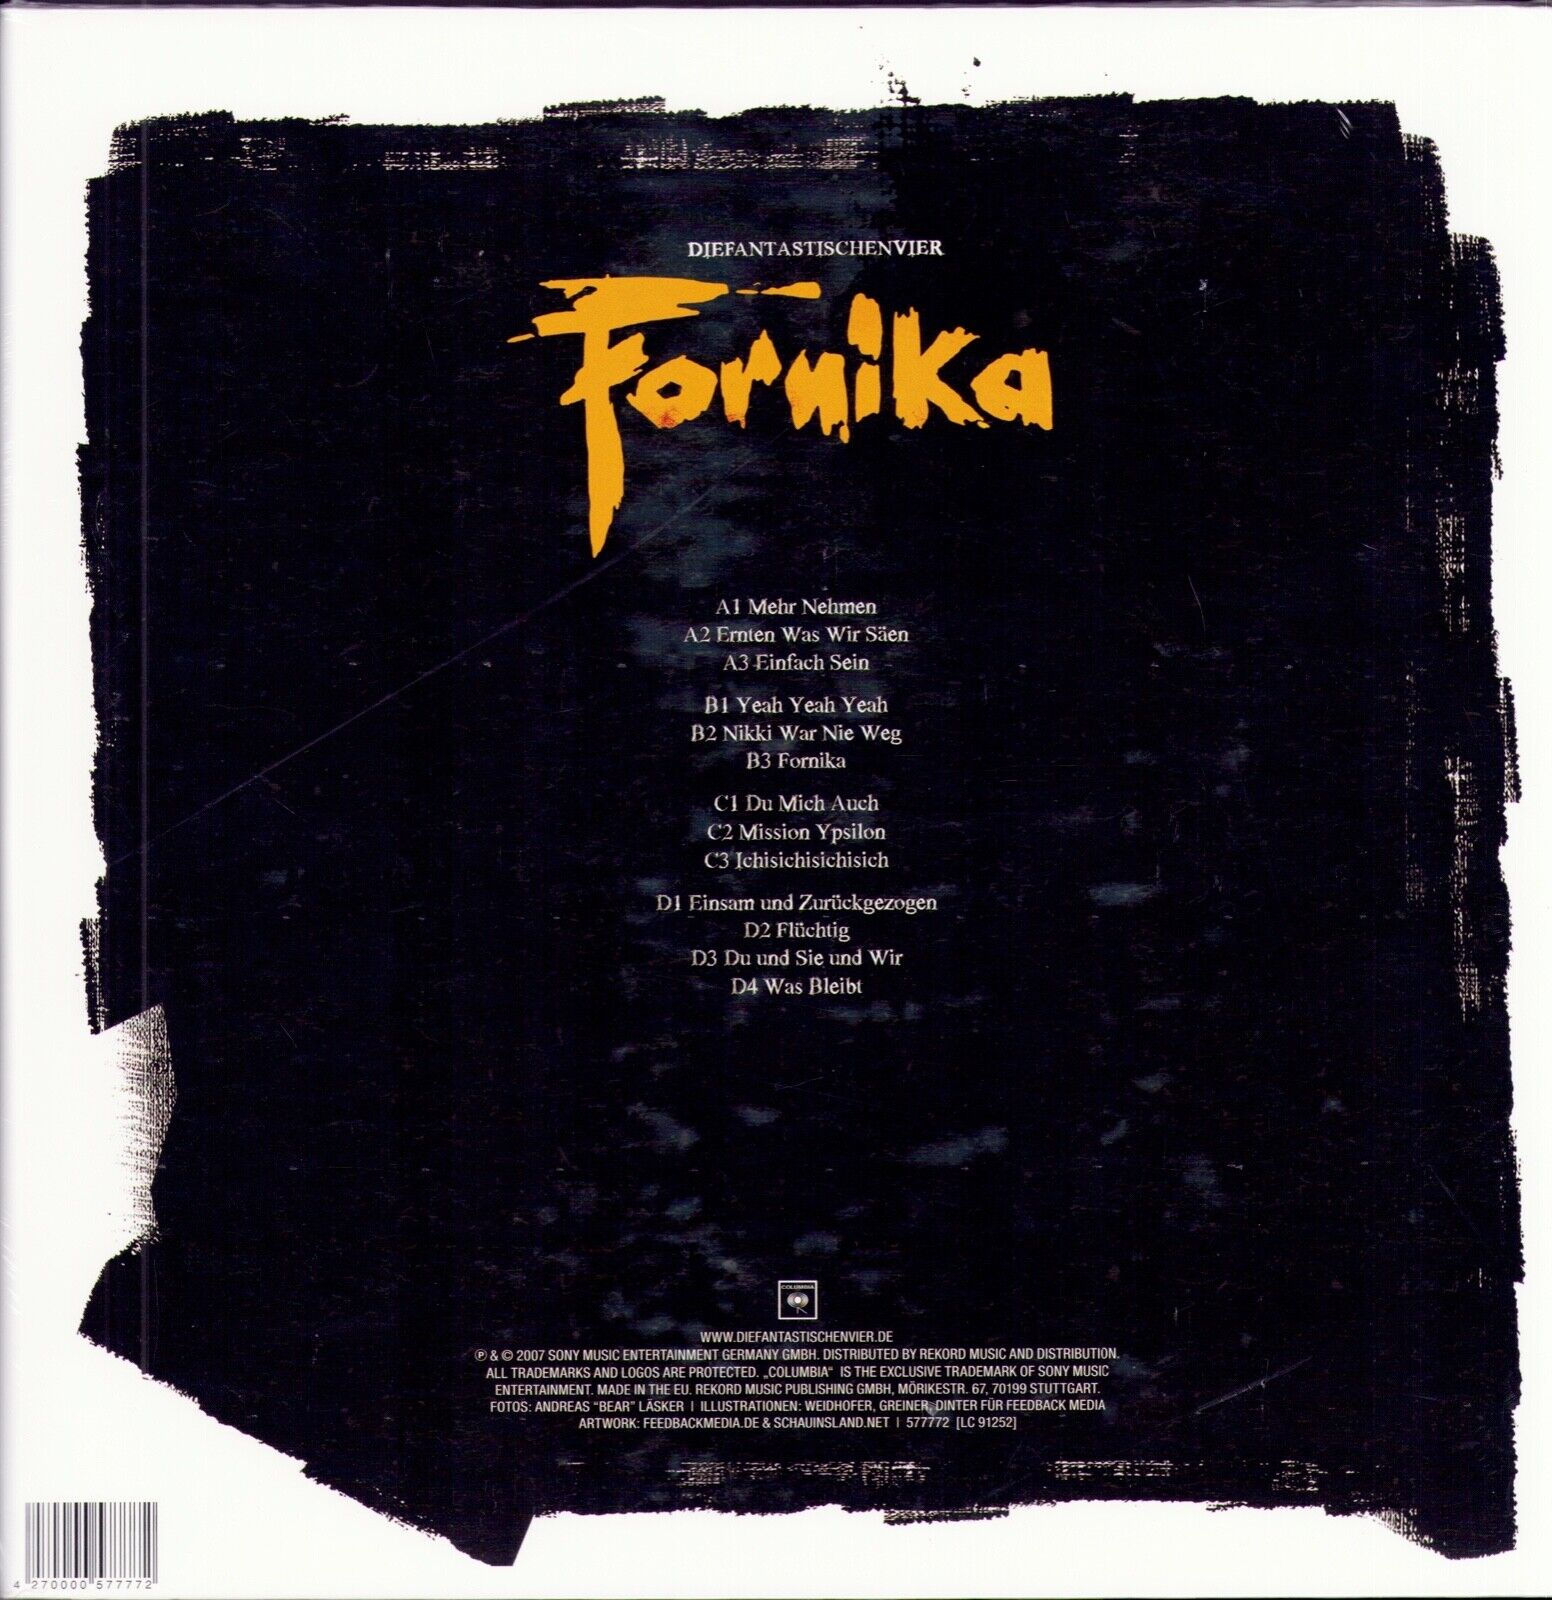 Die Fantastischen Vier - Fornika Vinyl 2LP